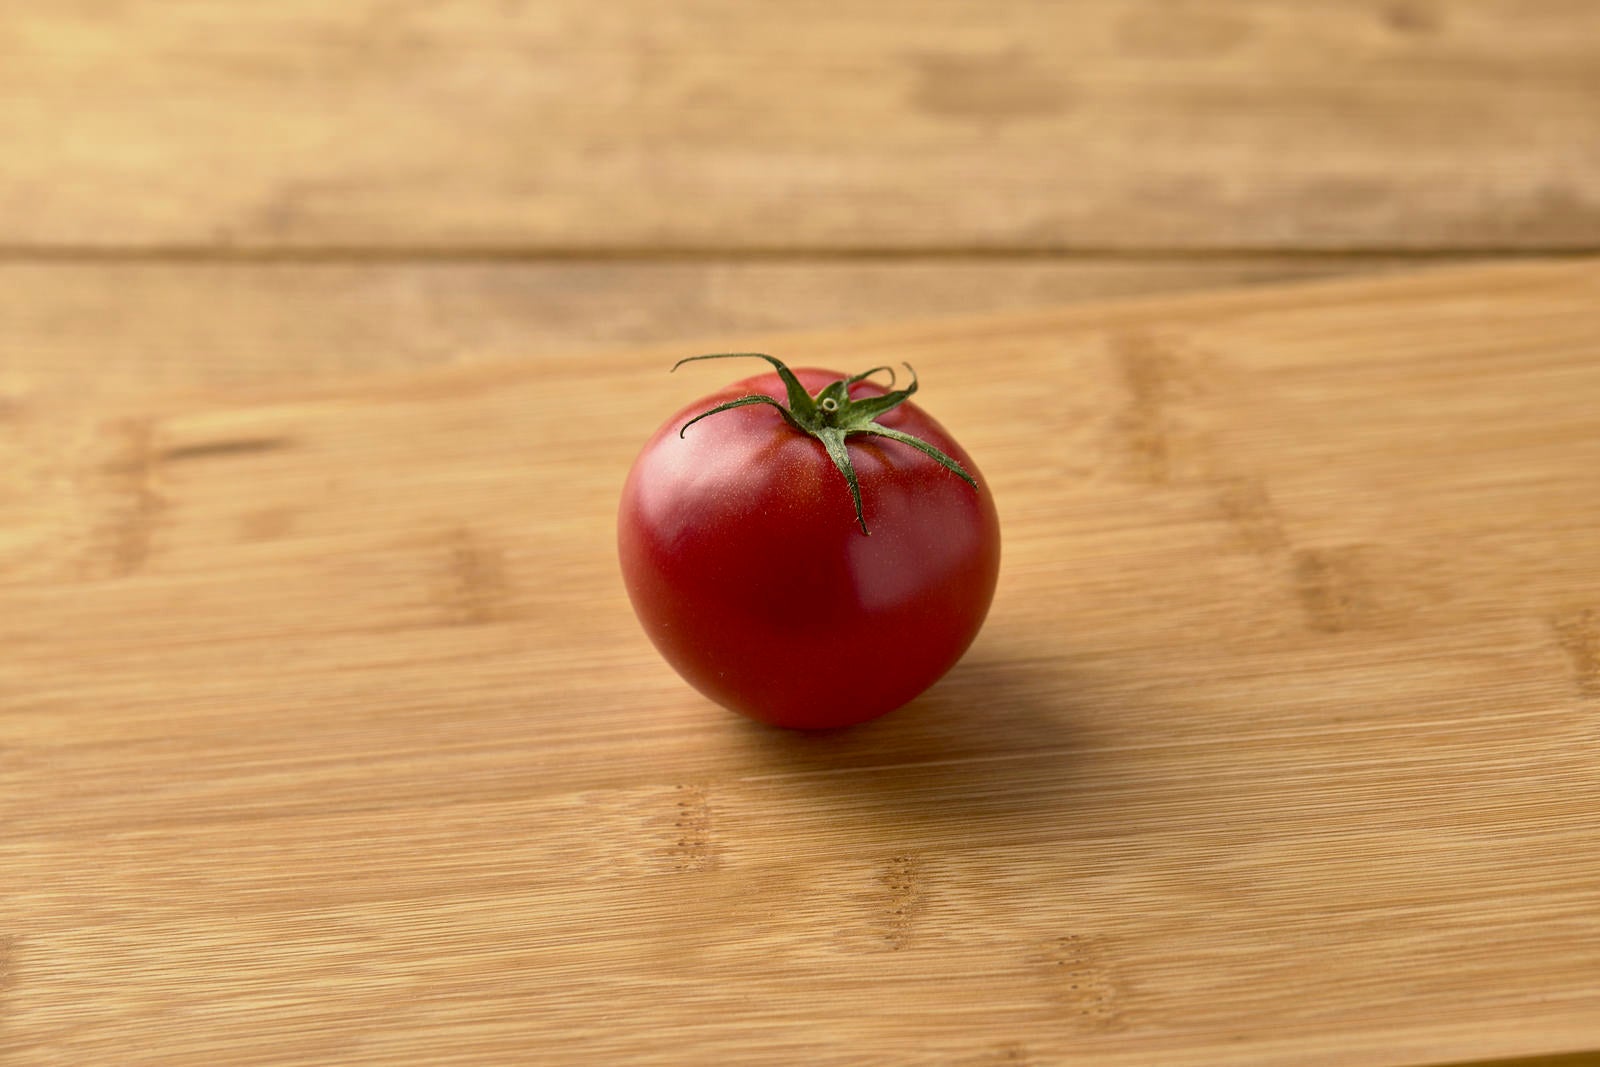 「取り残された一個のミニトマト」の写真